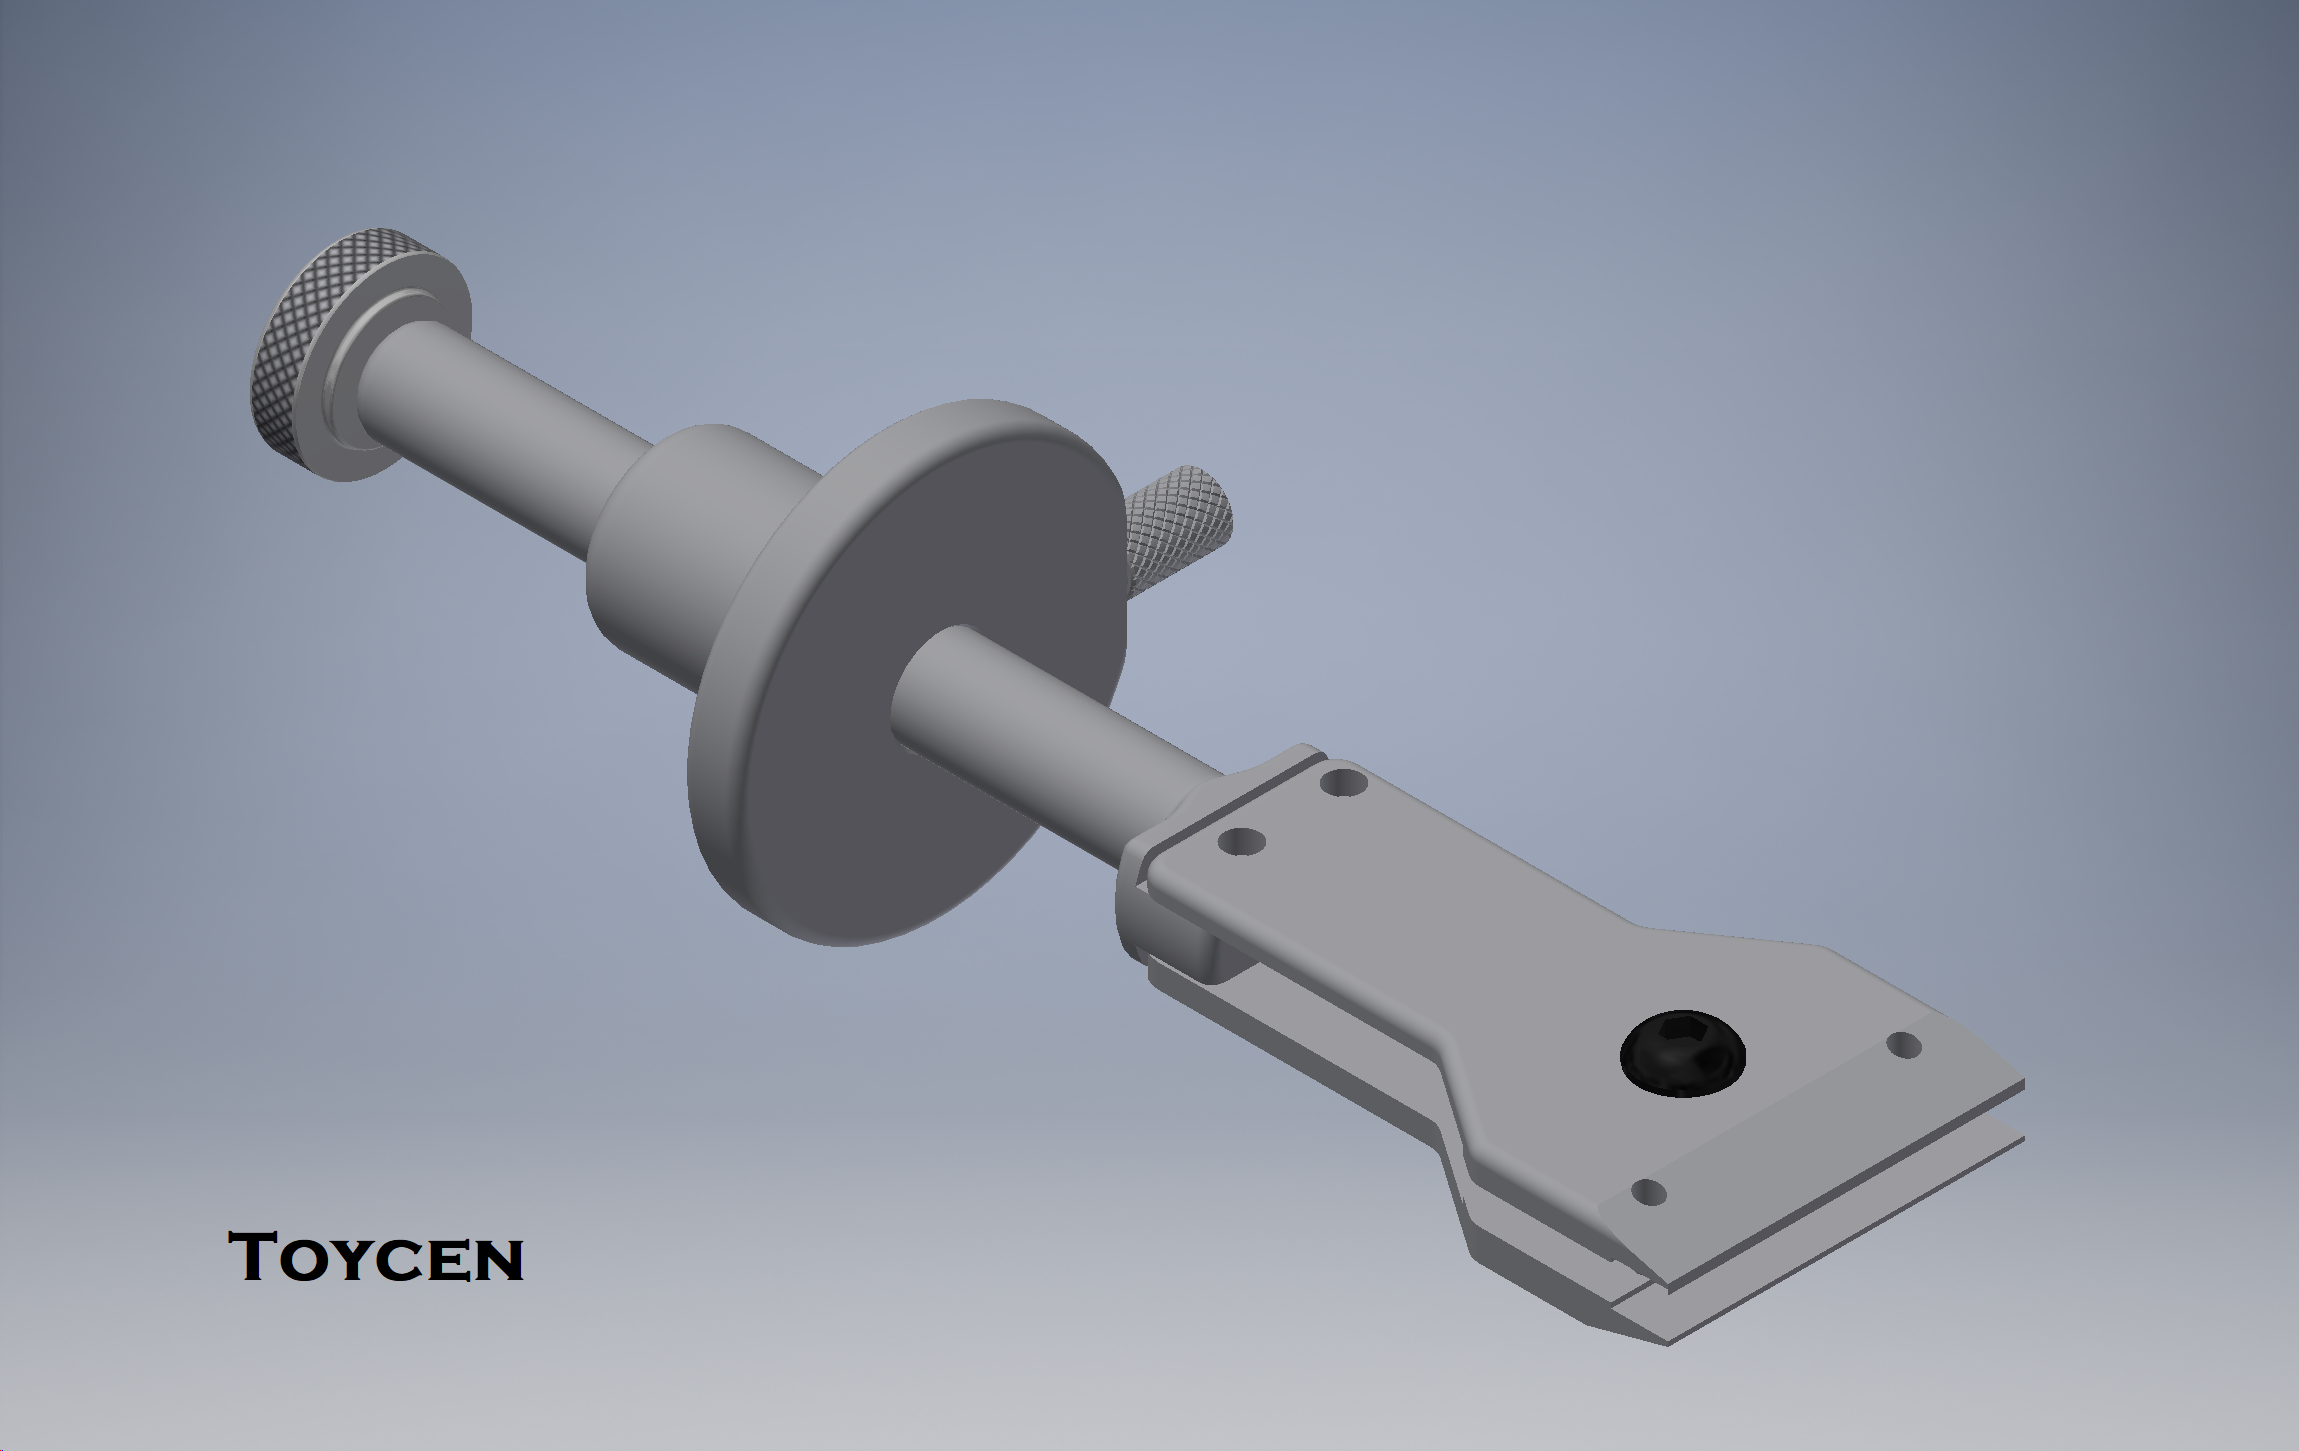 KNIFE SHARPENING GUIDE FOR BELT SANDER 3D model 3D printable